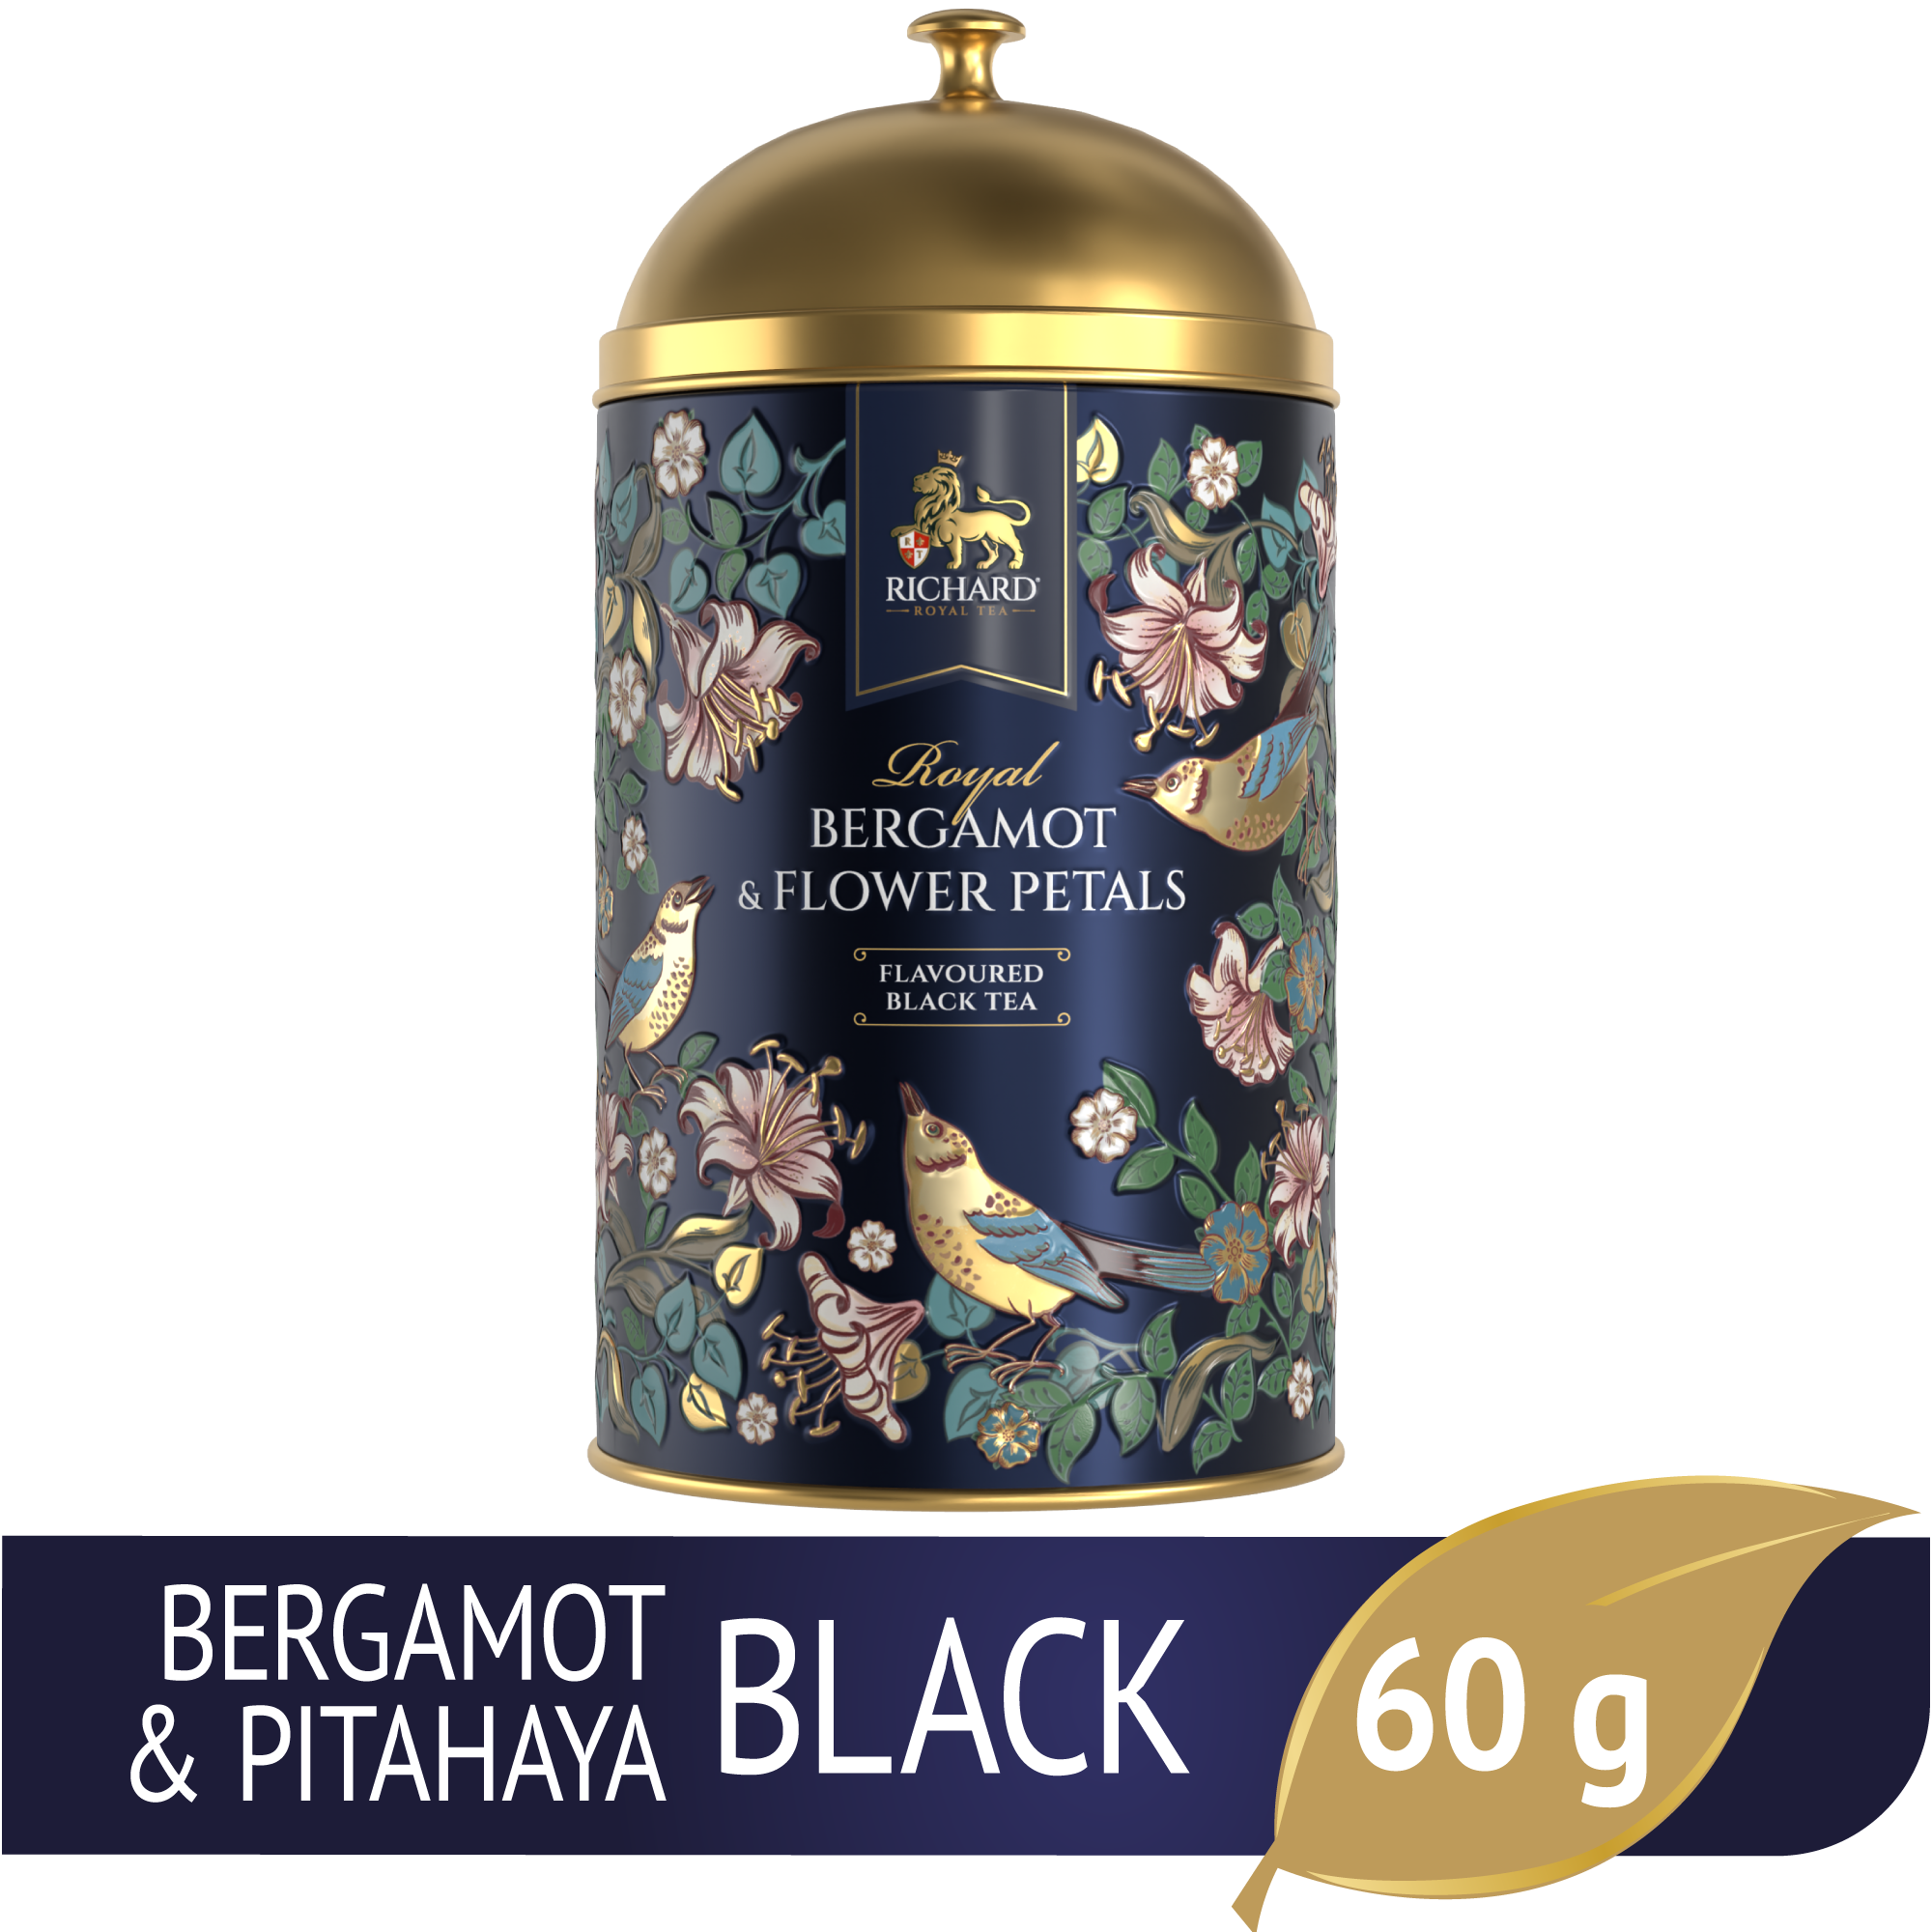 Richard "Királyi Bergamott & Virágszirmok", fémdobozos ízesített fekete szálas tea 60g, KÉK Richard Royal Tea